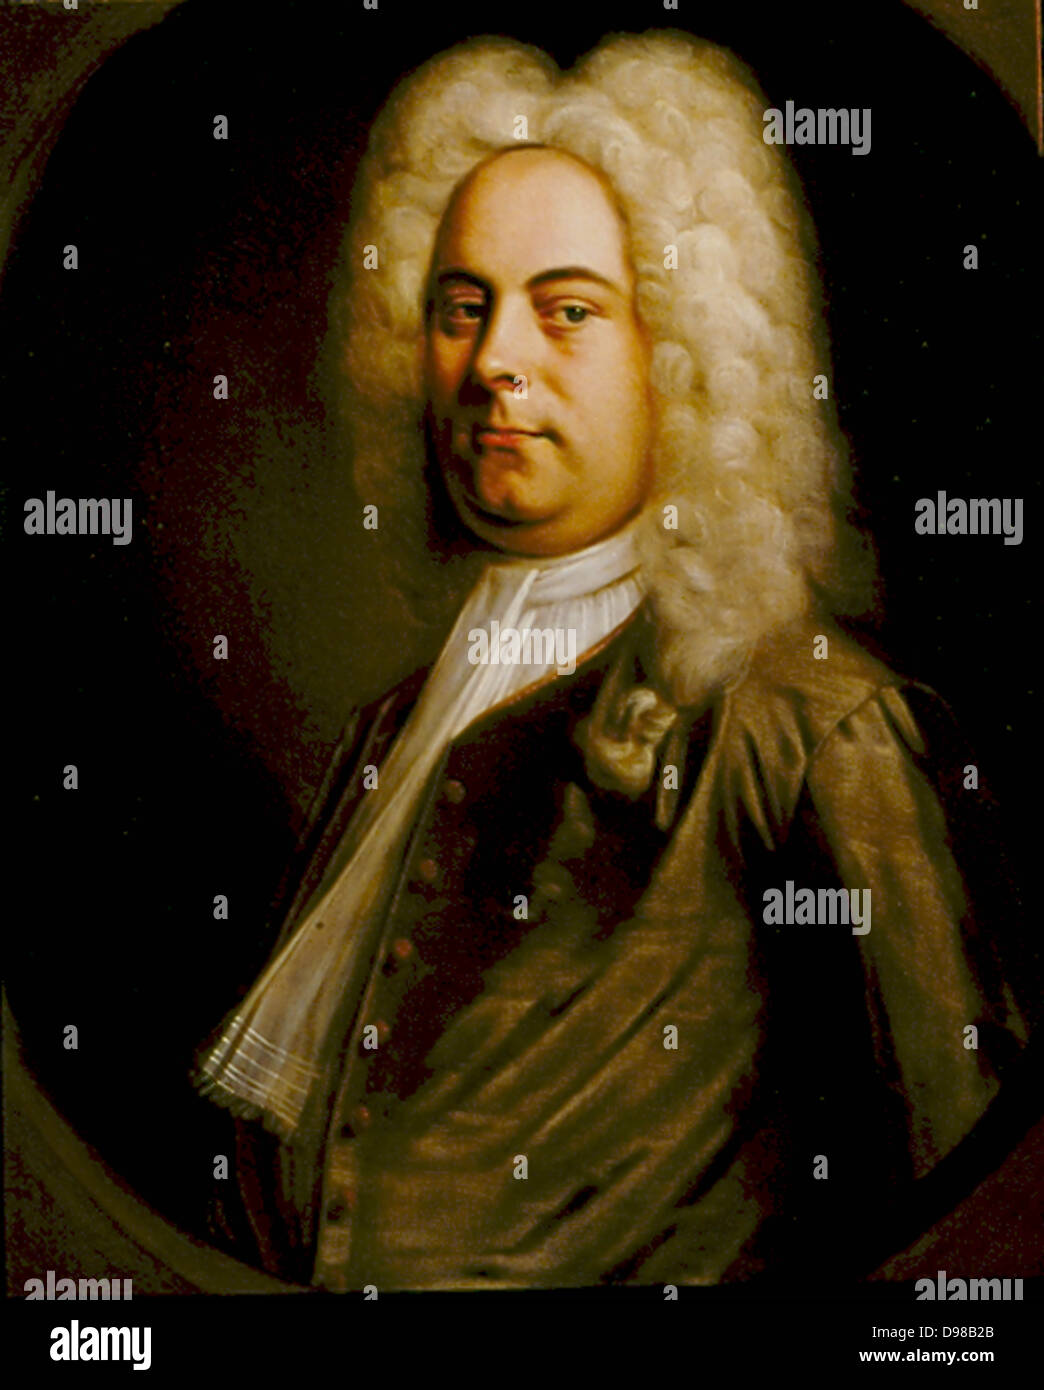 George Frederic Handel (1685-1759) tedesco-compositore nato che si stabilirono in Inghilterra. Ritratto di 1726-1728 attribuito a Balthasar Denner (1726-1749). Olio su tela. Foto Stock